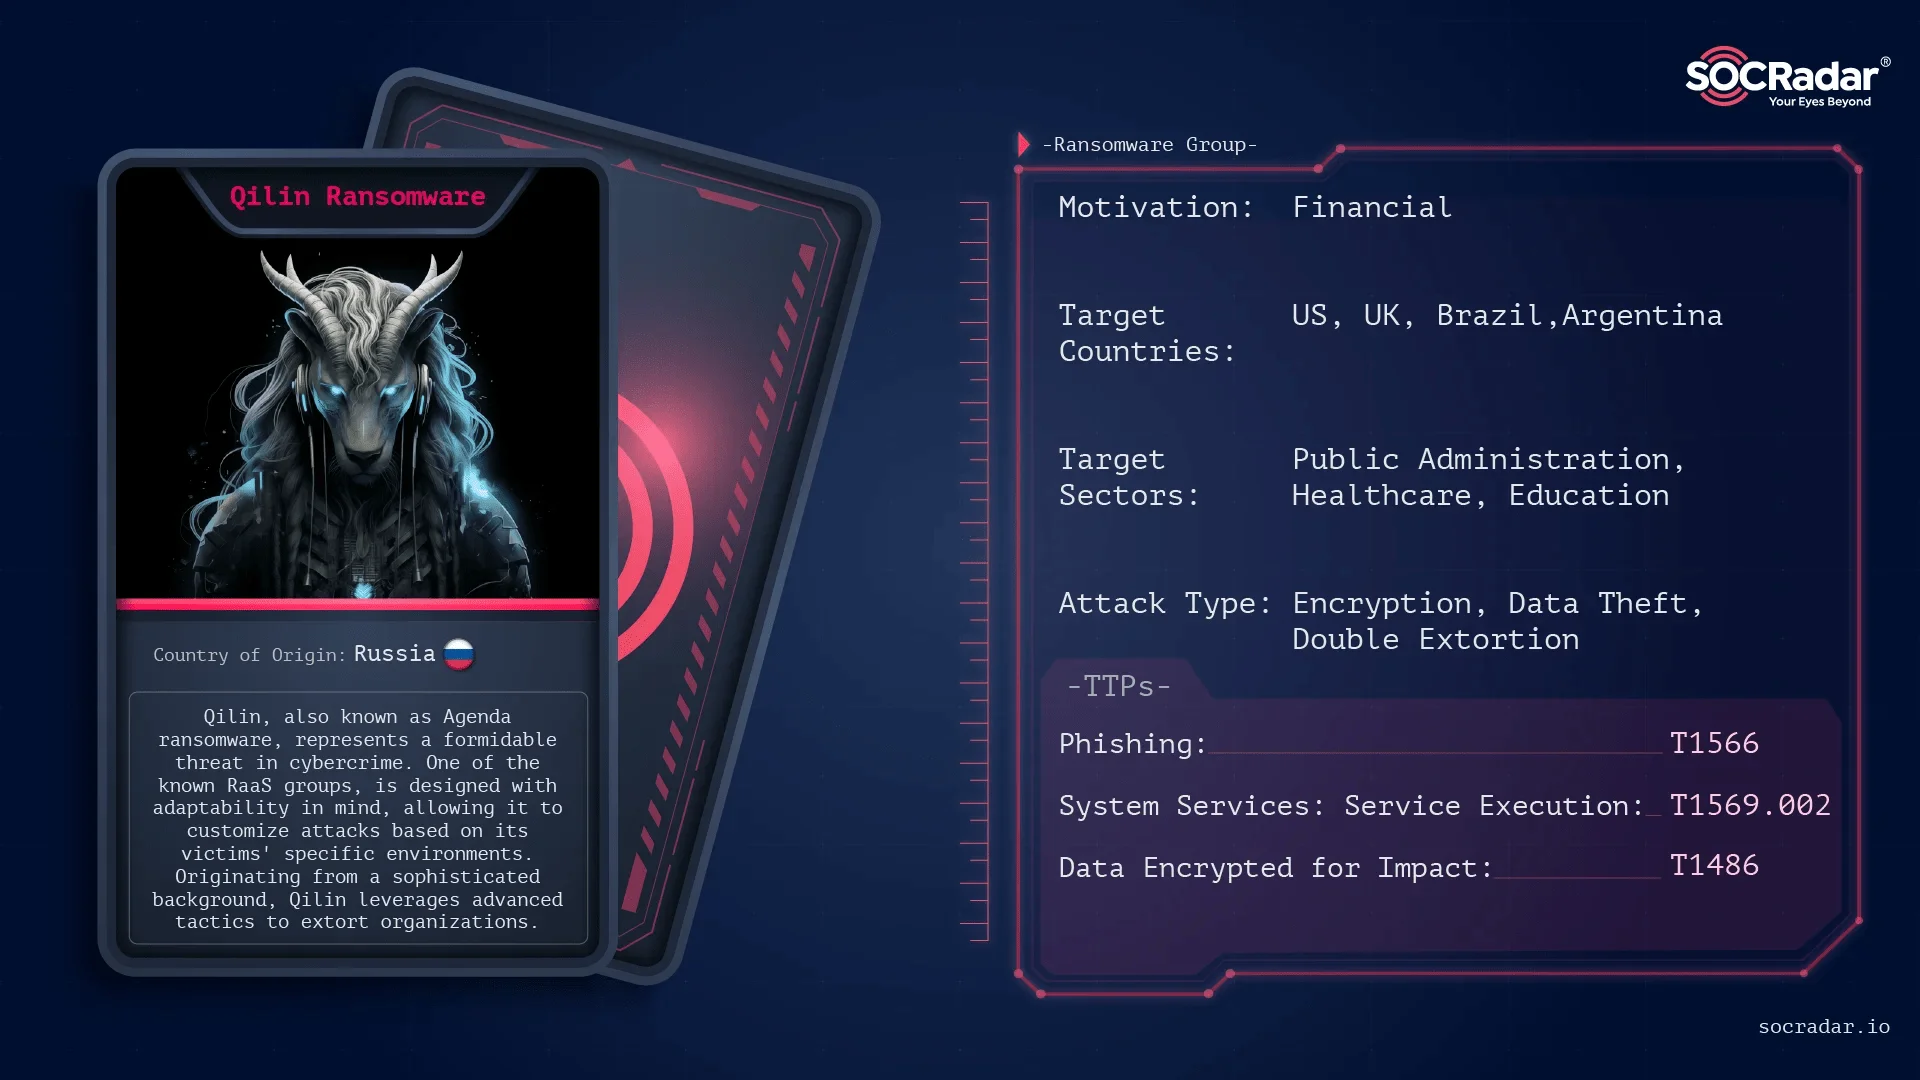 Dark Web Profile: Qilin(Agenda) Ransomware